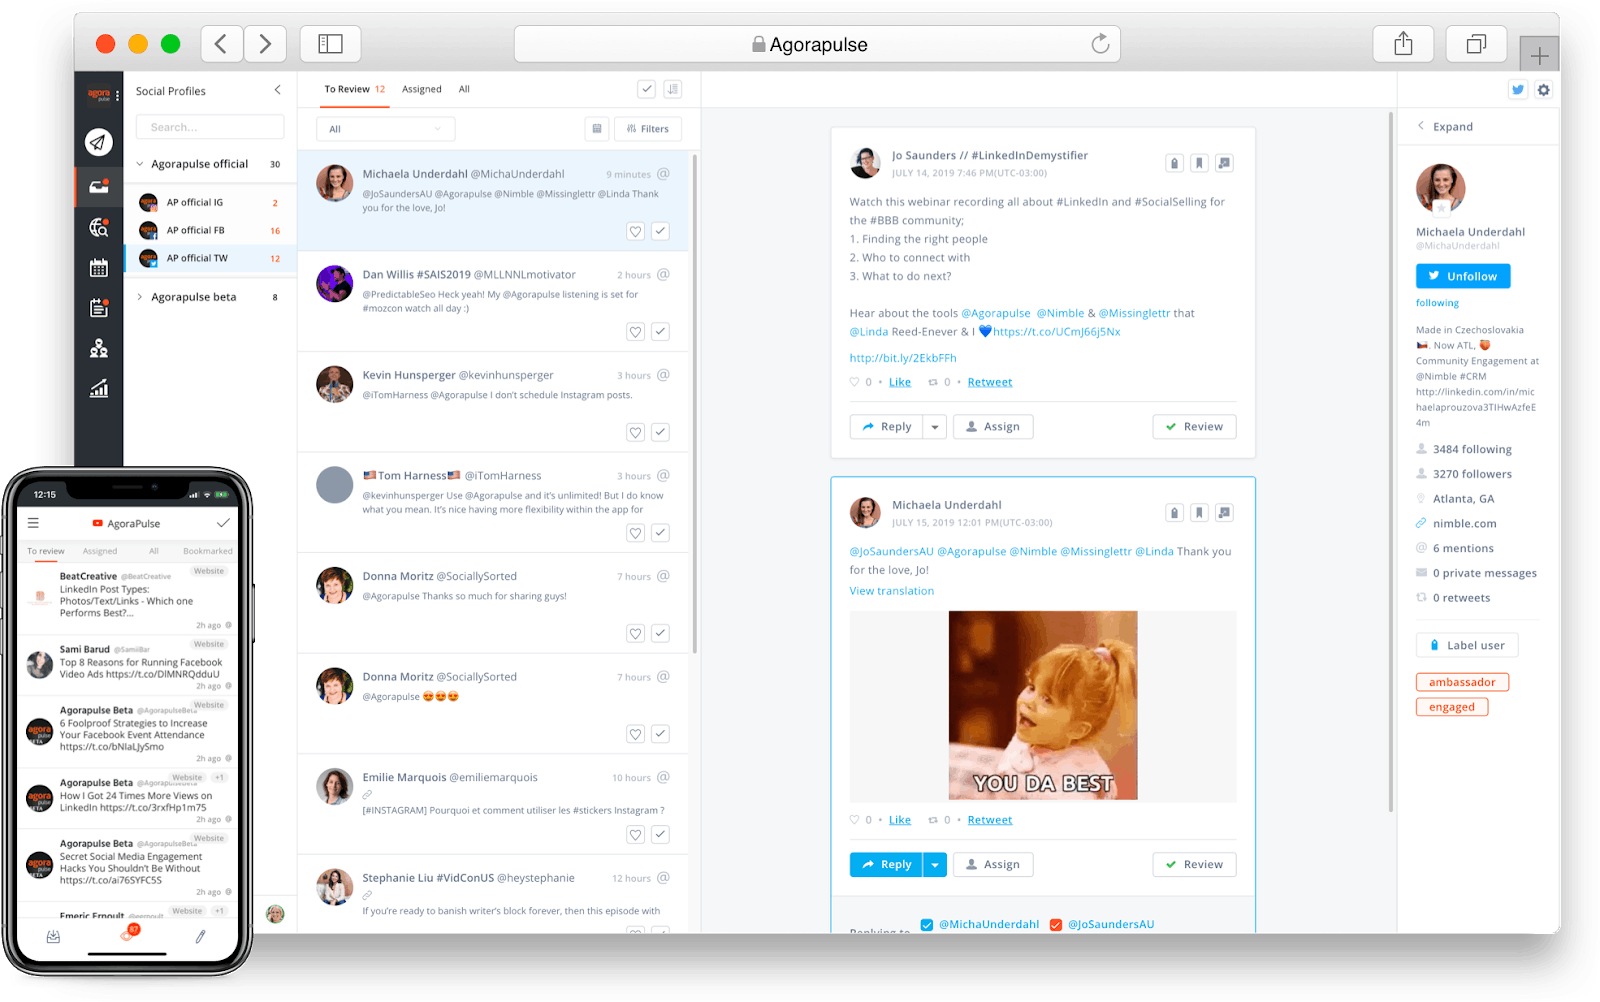 Agorapulse inbox voor social monitoring tool afgebeeld op mobiel en desktop